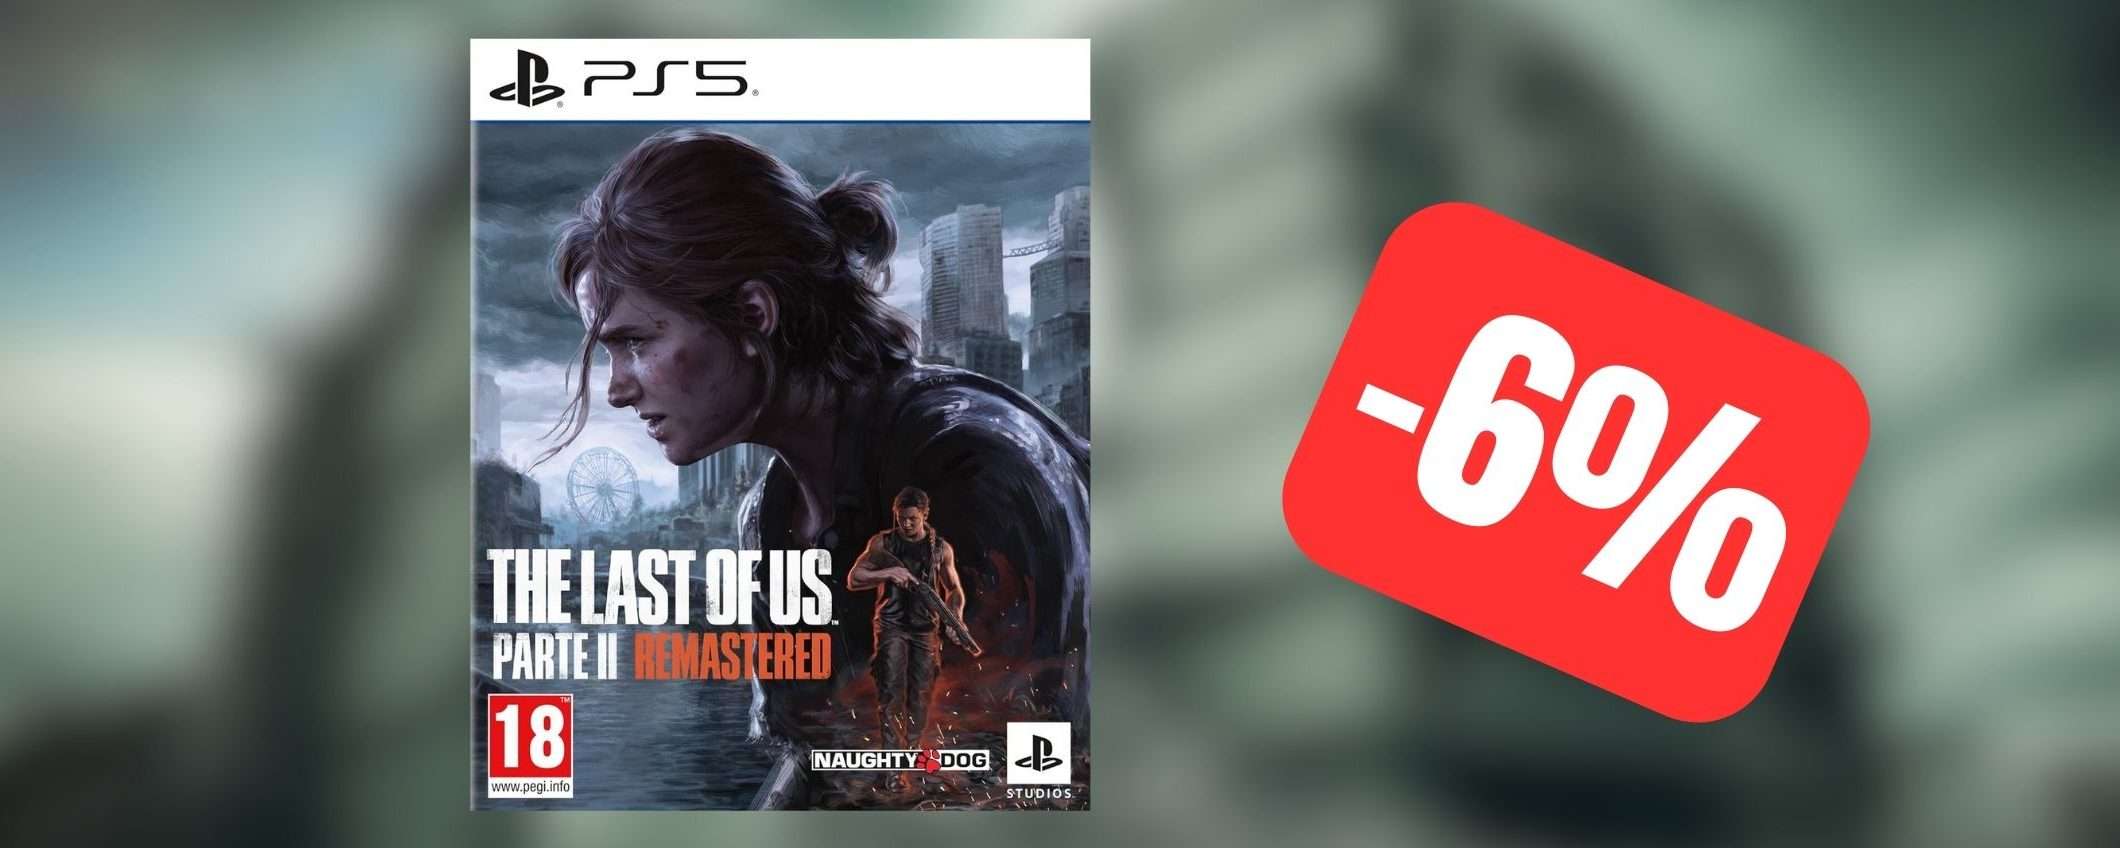 The Last of Us Parte II Remastered PS5 disponibile e IN OFFERTA su Amazon